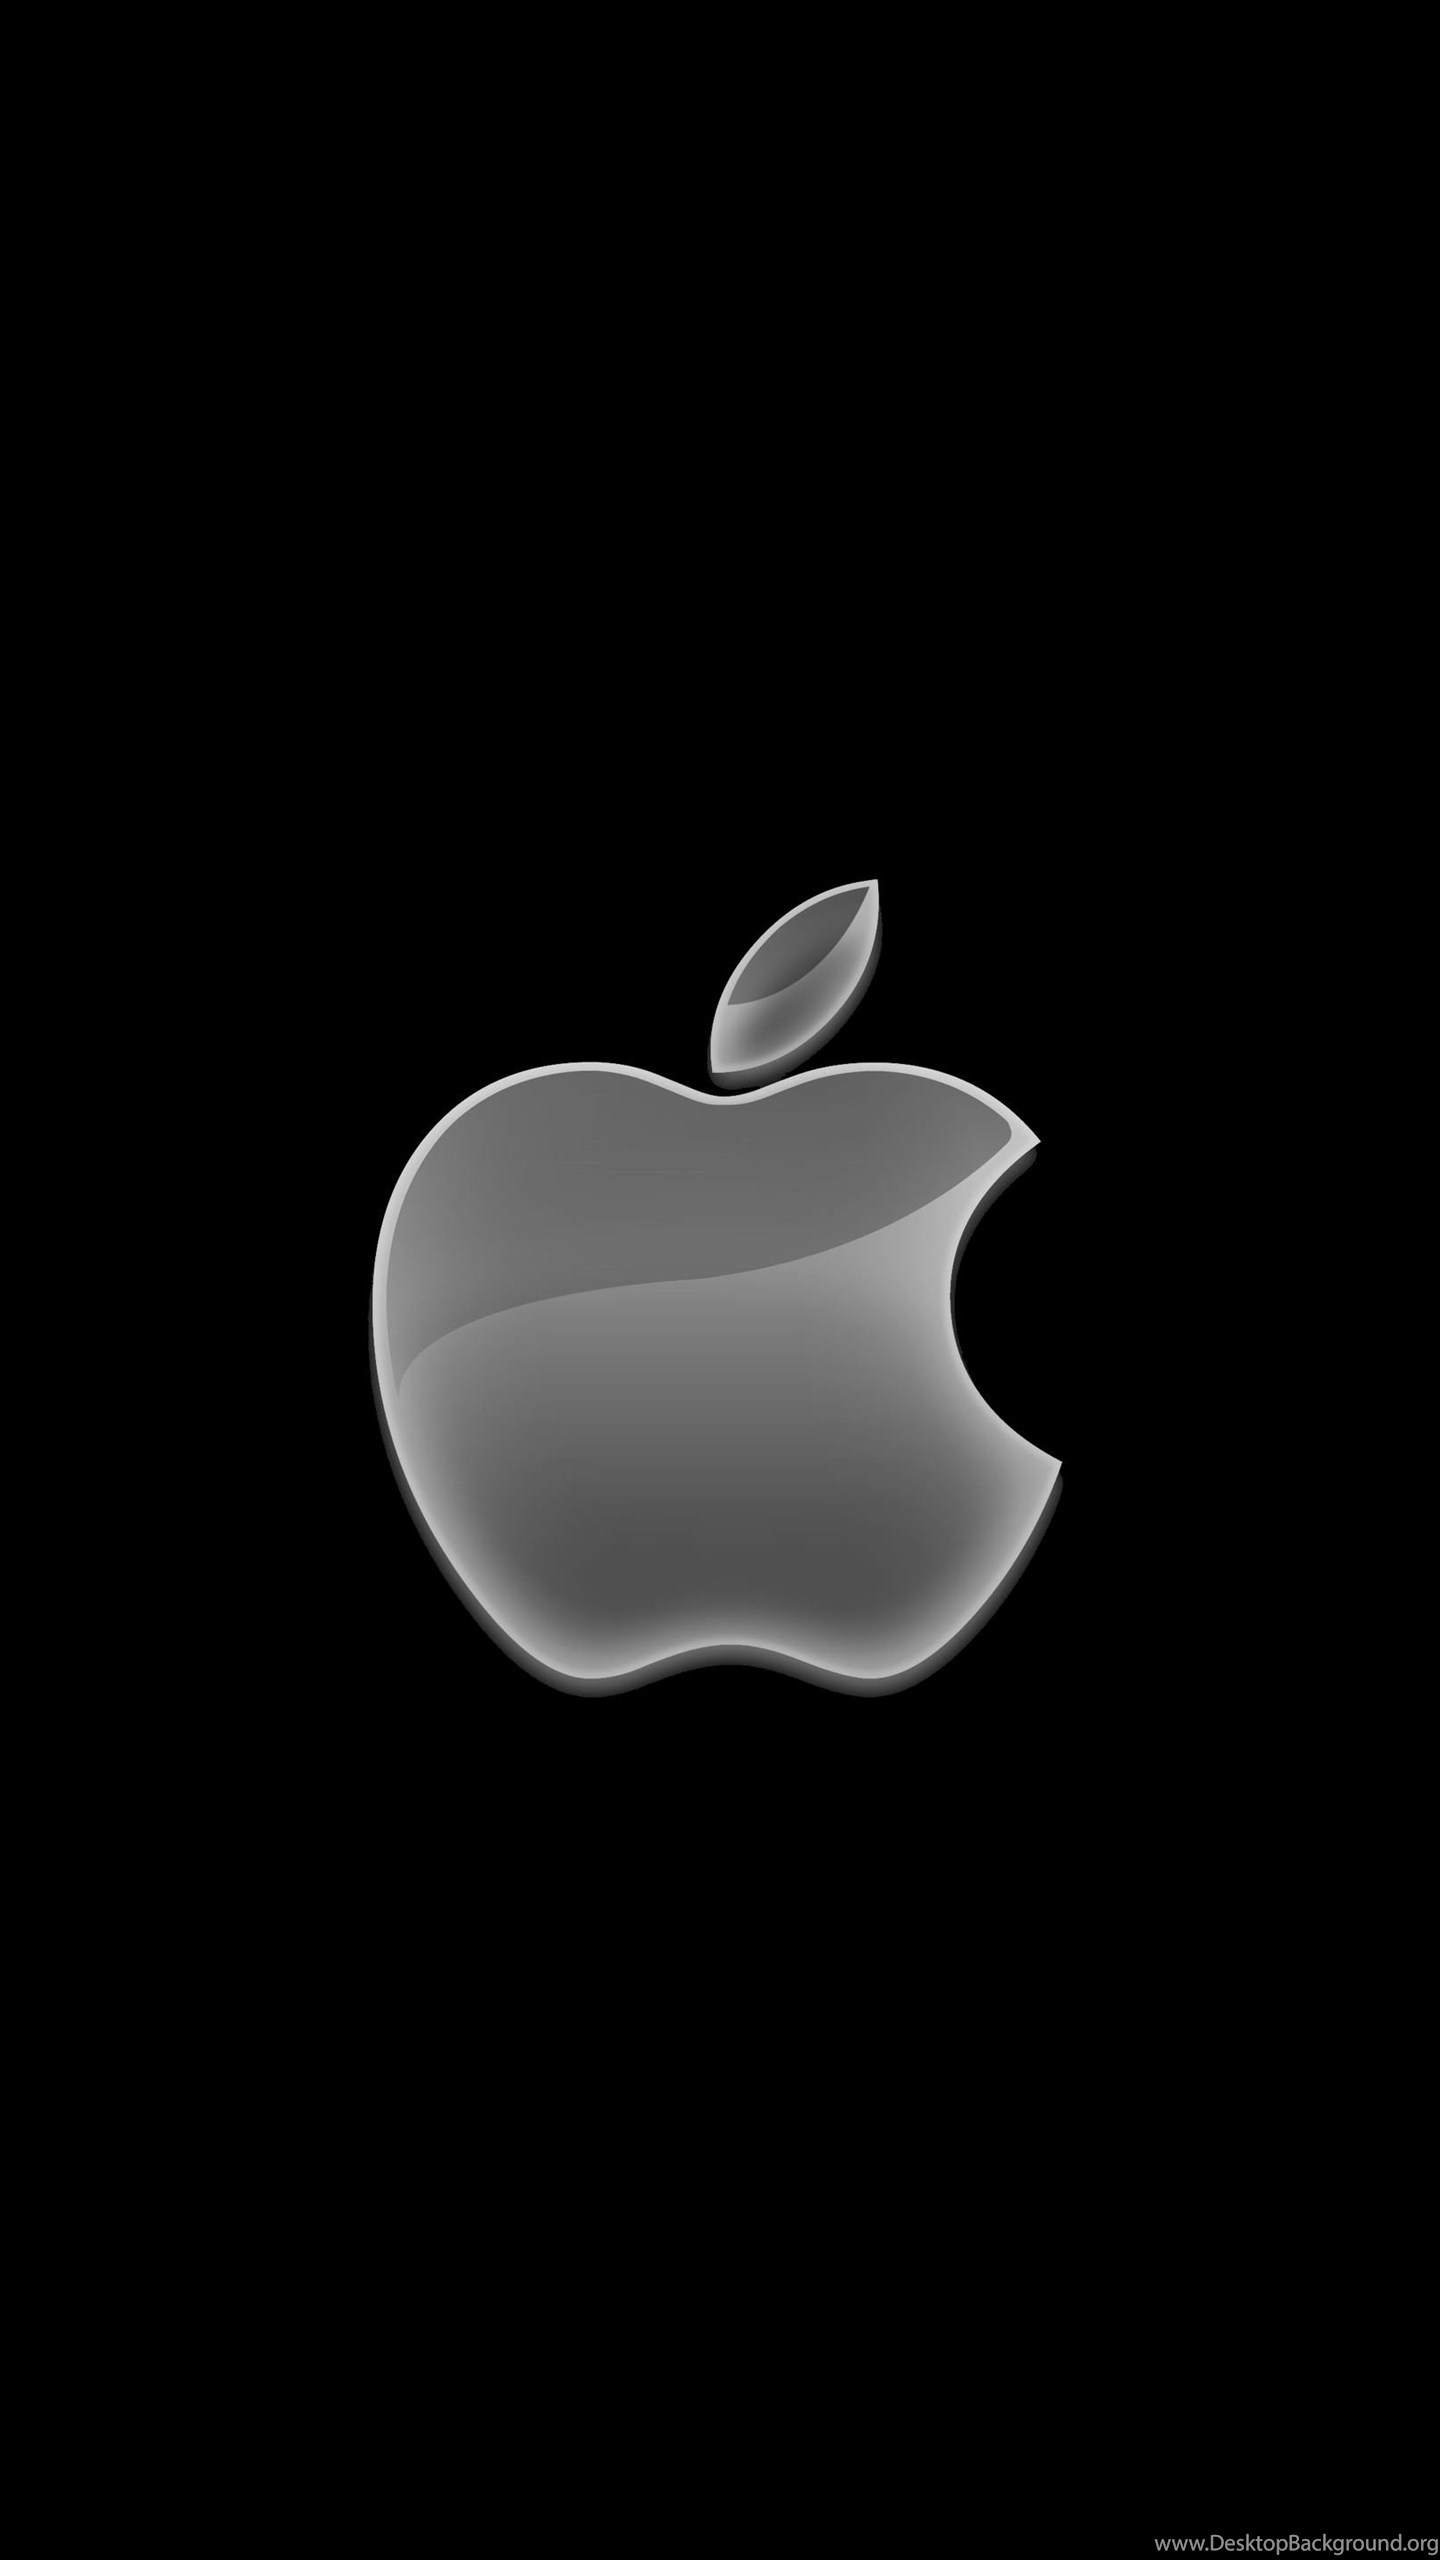 Найти картинку айфона. Apple айфон 7. Логотип Apple. Заставка на айфон. Заставка на айфон оригинальная.